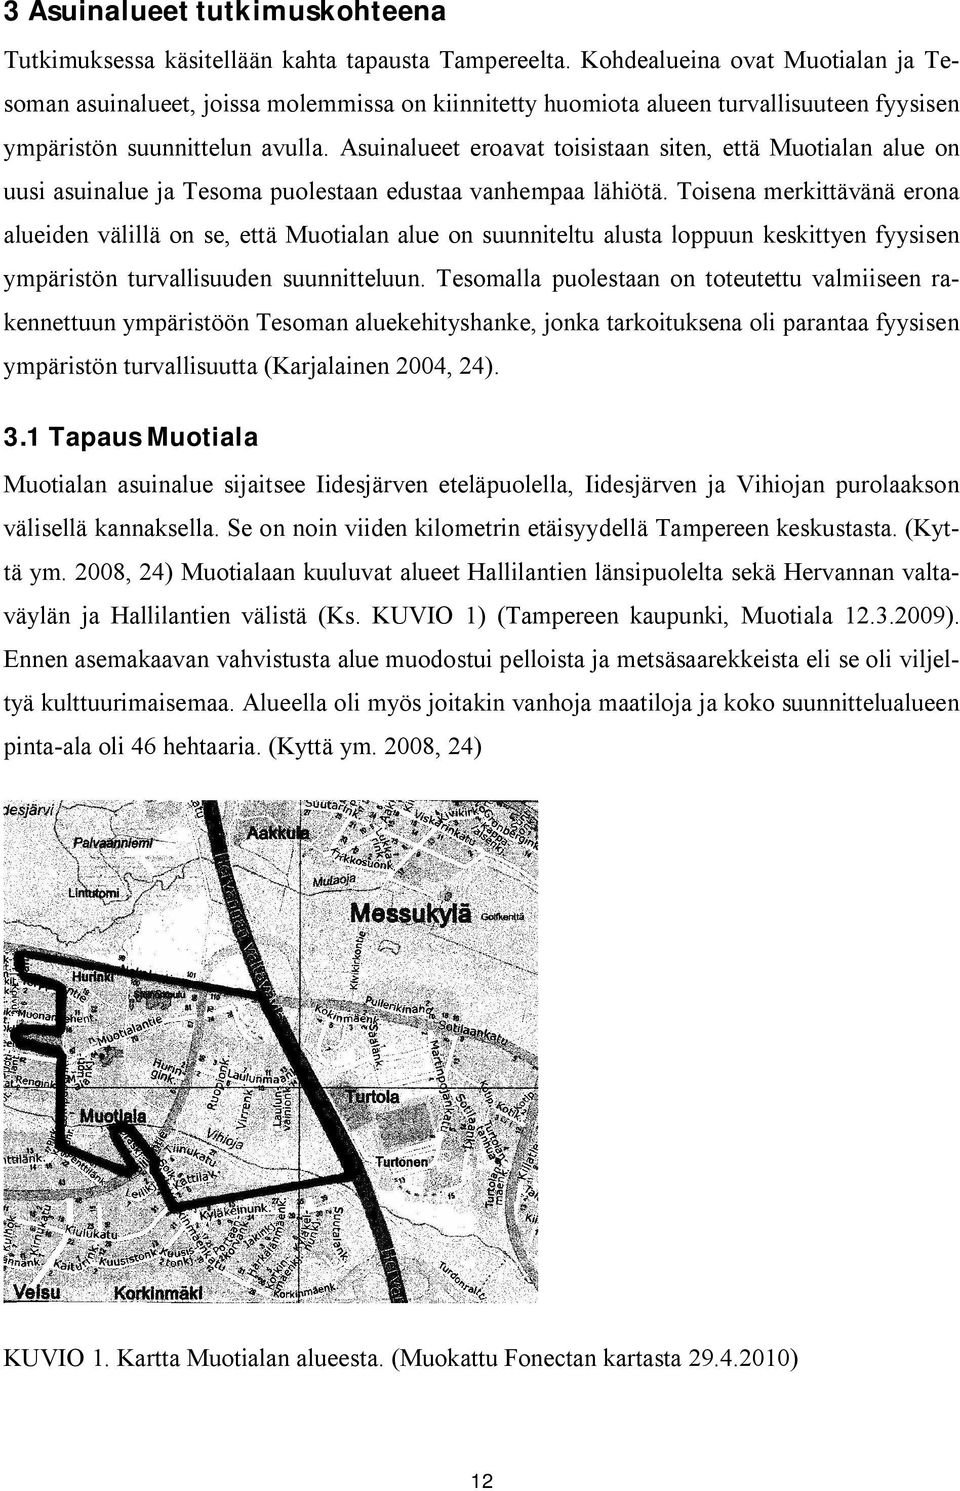 Asuinalueet eroavat toisistaan siten, että Muotialan alue on uusi asuinalue ja Tesoma puolestaan edustaa vanhempaa lähiötä.